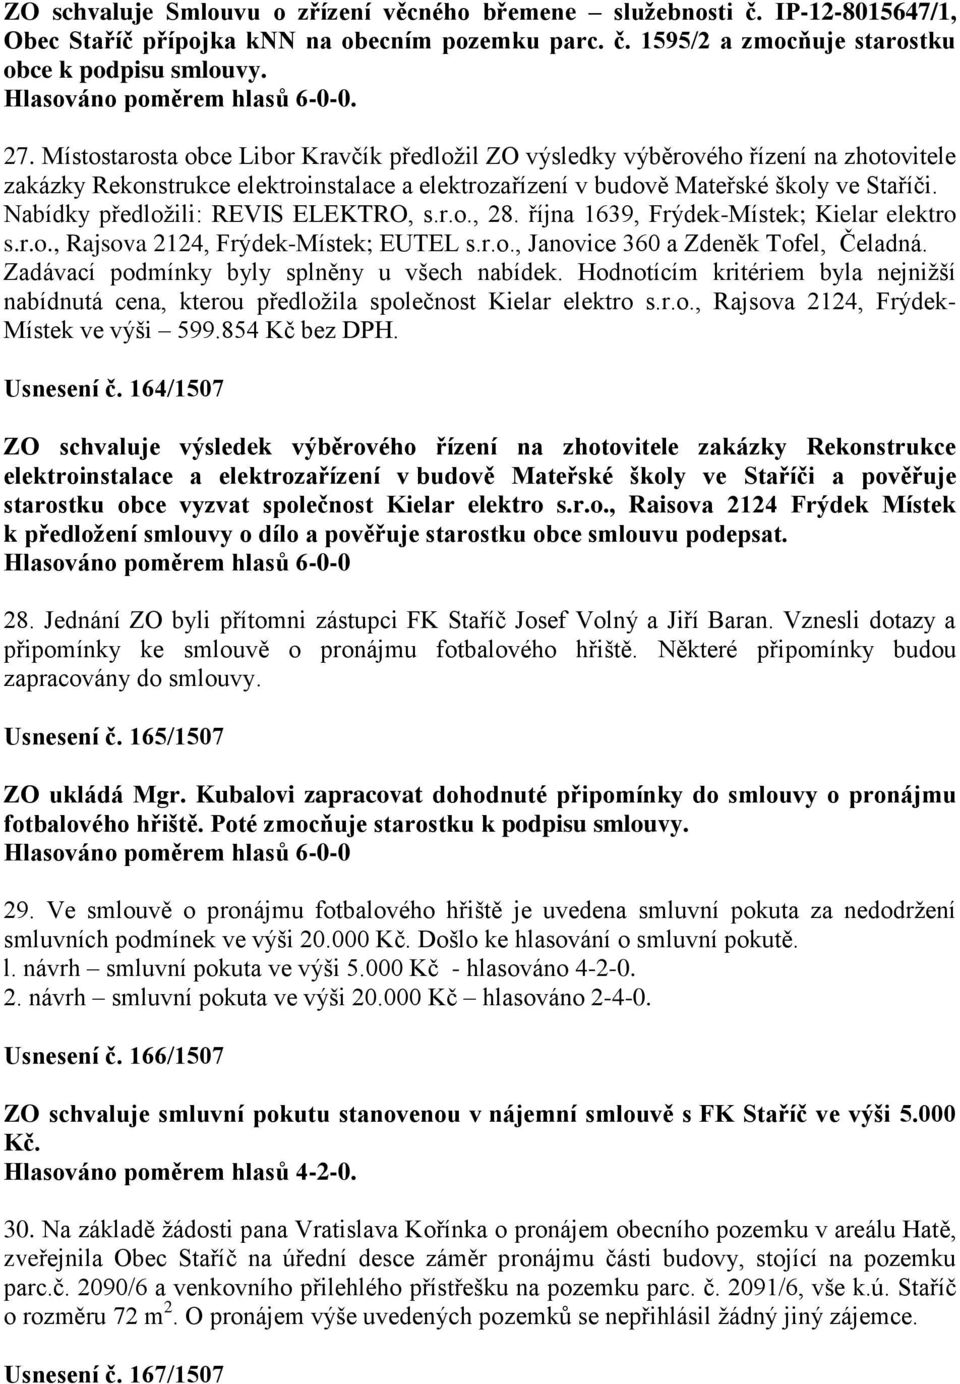 Nabídky předložili: REVIS ELEKTRO, s.r.o., 28. října 1639, Frýdek-Místek; Kielar elektro s.r.o., Rajsova 2124, Frýdek-Místek; EUTEL s.r.o., Janovice 360 a Zdeněk Tofel, Čeladná.